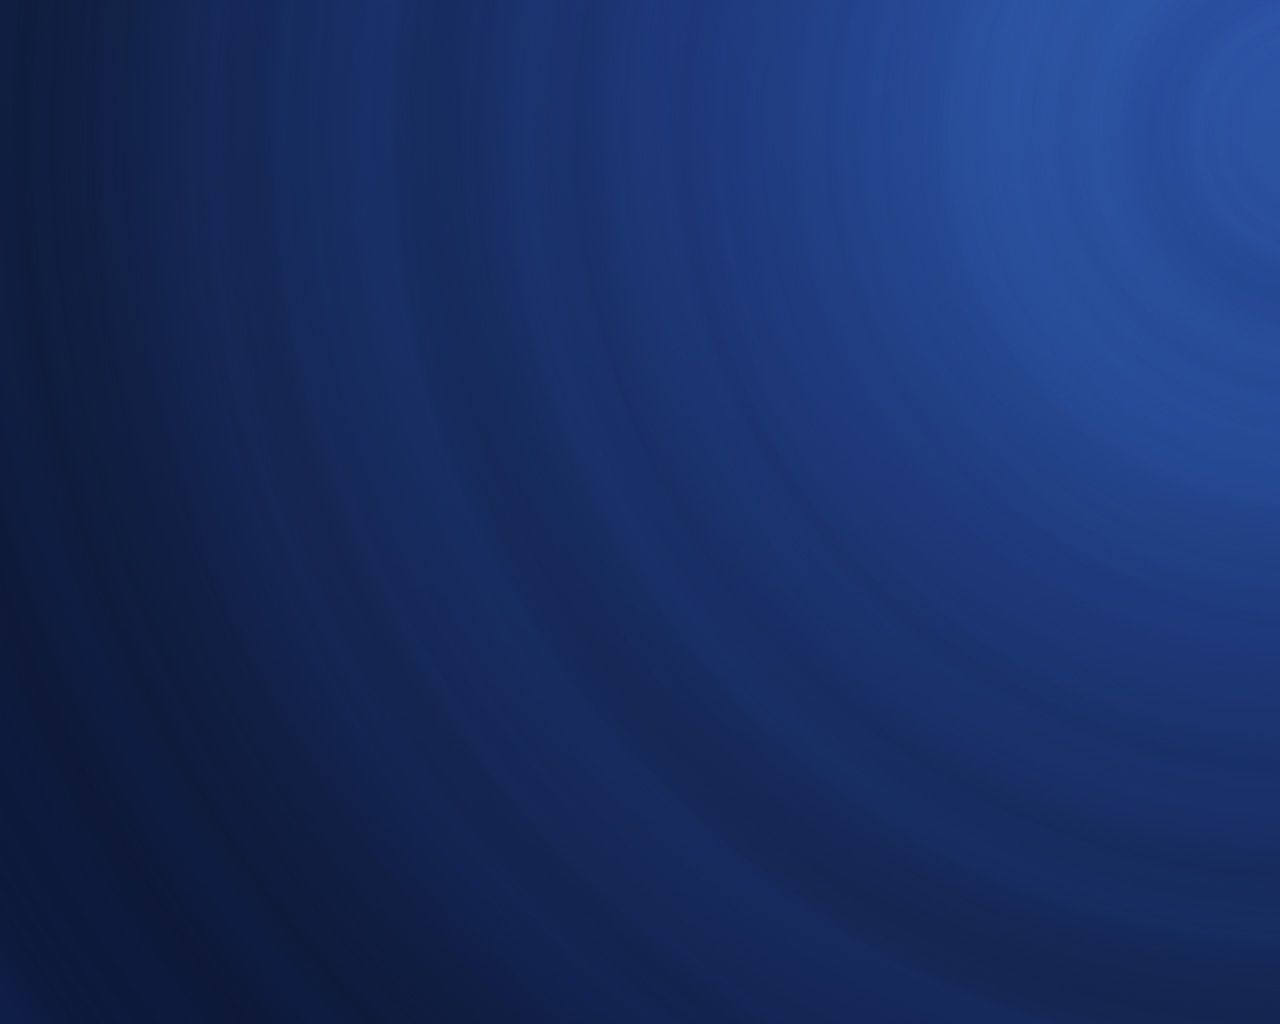 Free download Plain Blue Background wallpaper Plain Blue